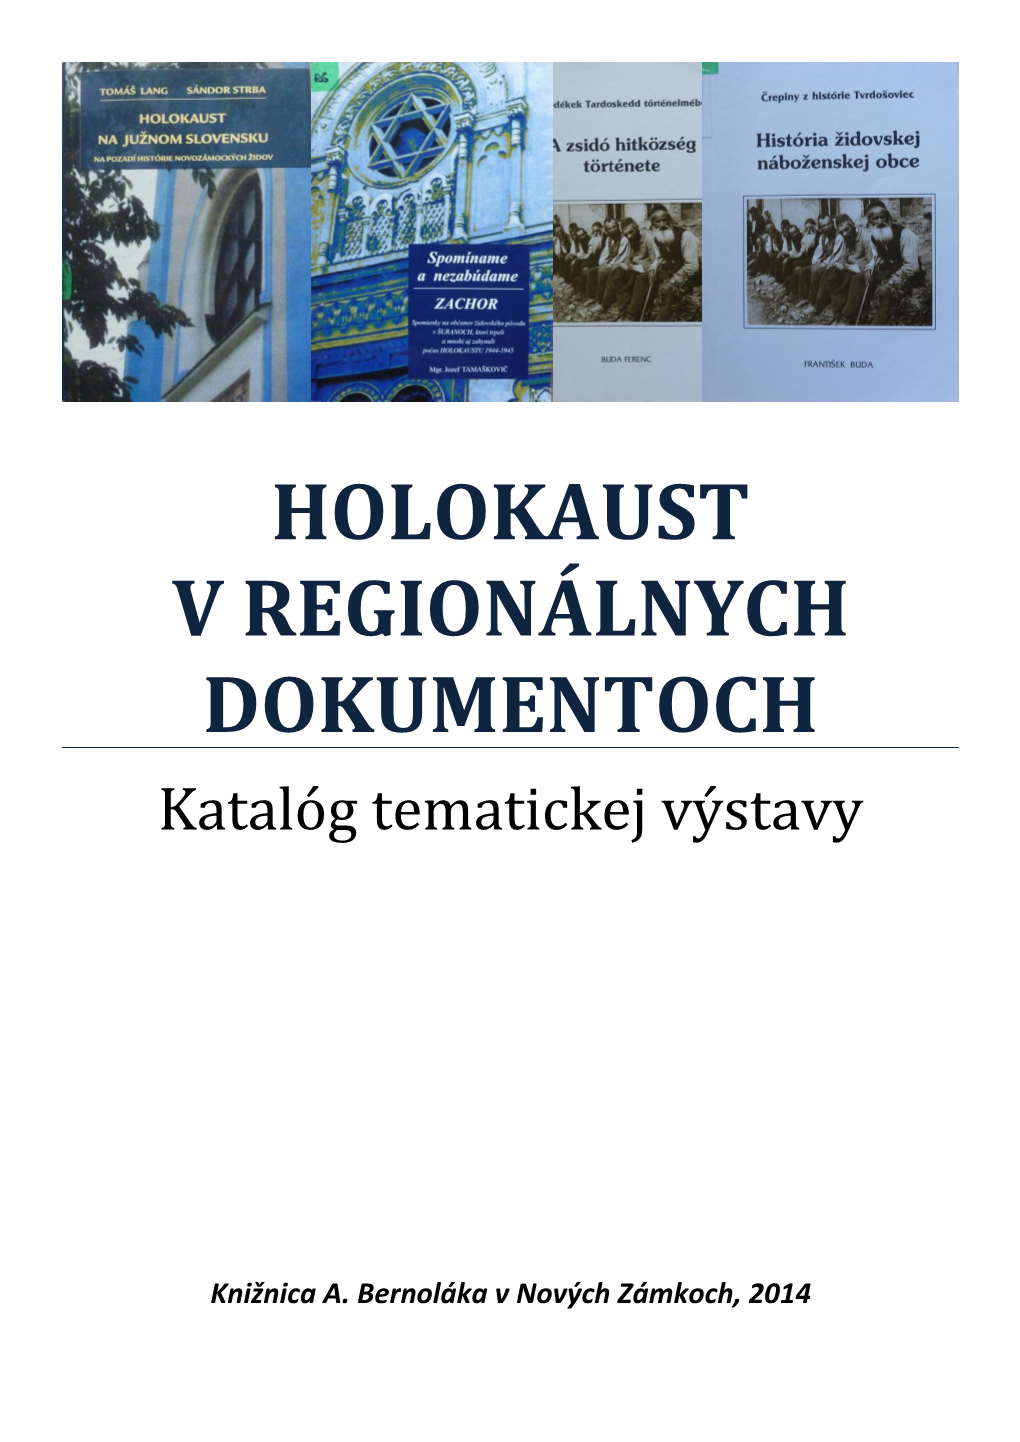 Holokaust V Regionálnych Dokumentoch, 2014